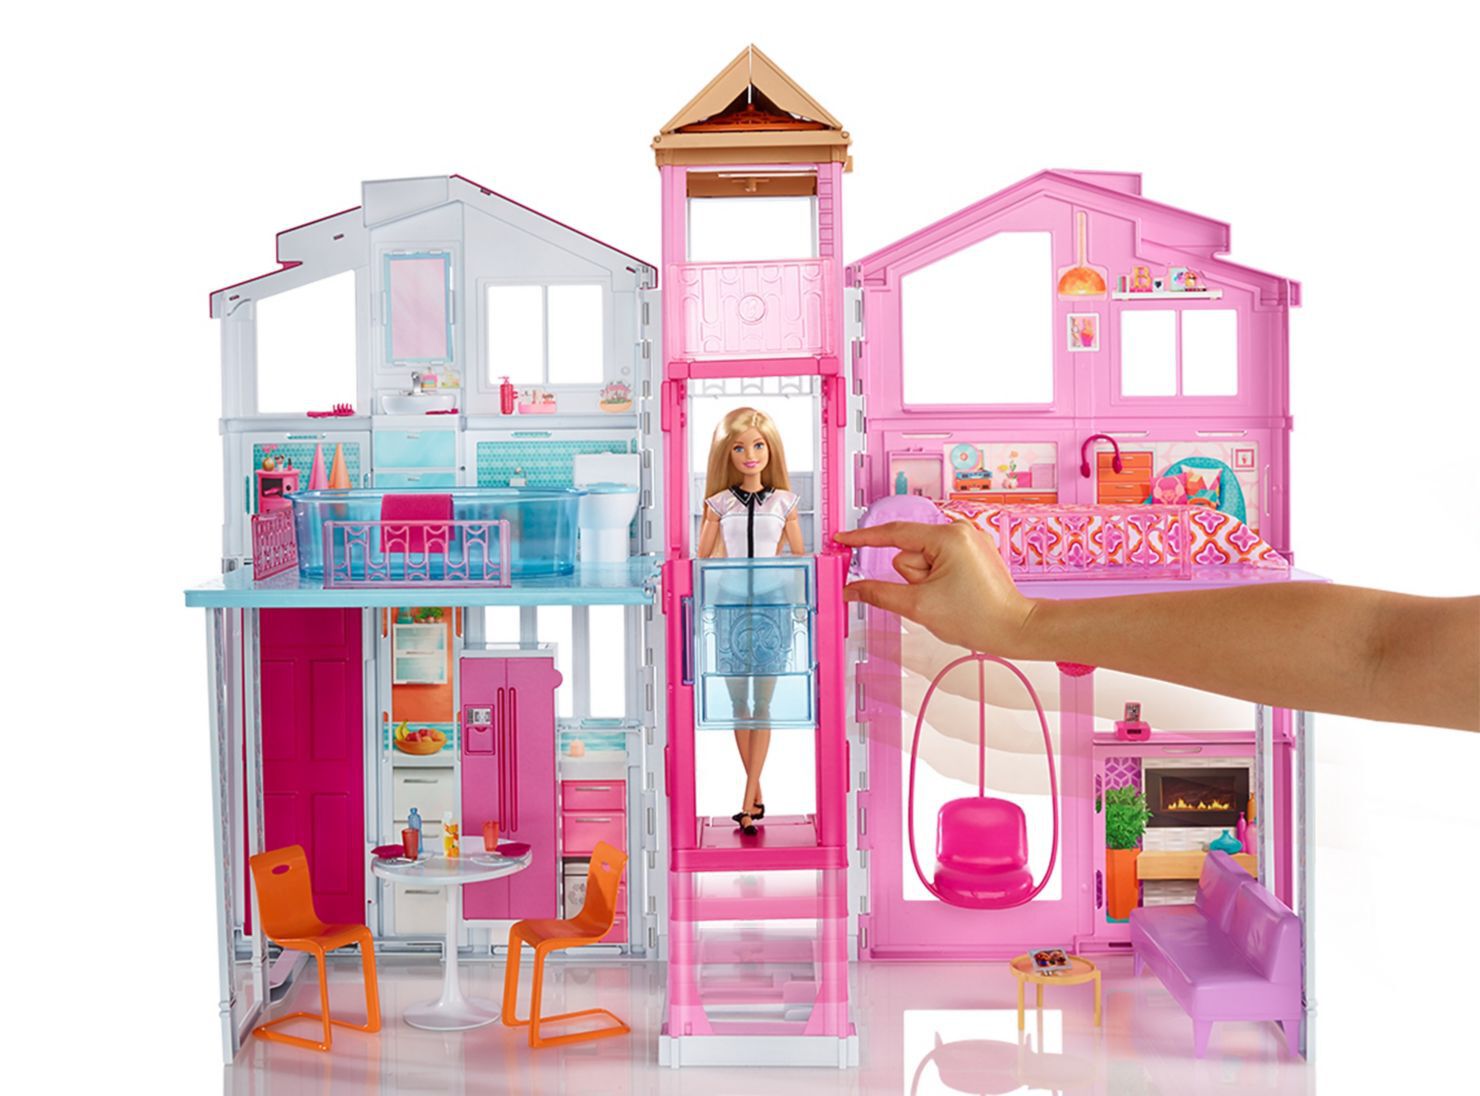 Лучший дом барби. Городской дом для Барби Малибу dly 32. Дом для куклы Barbie дом мечты fhy73. Дом Barbie Dreamhouse fhy73 Mattel игровой набор.